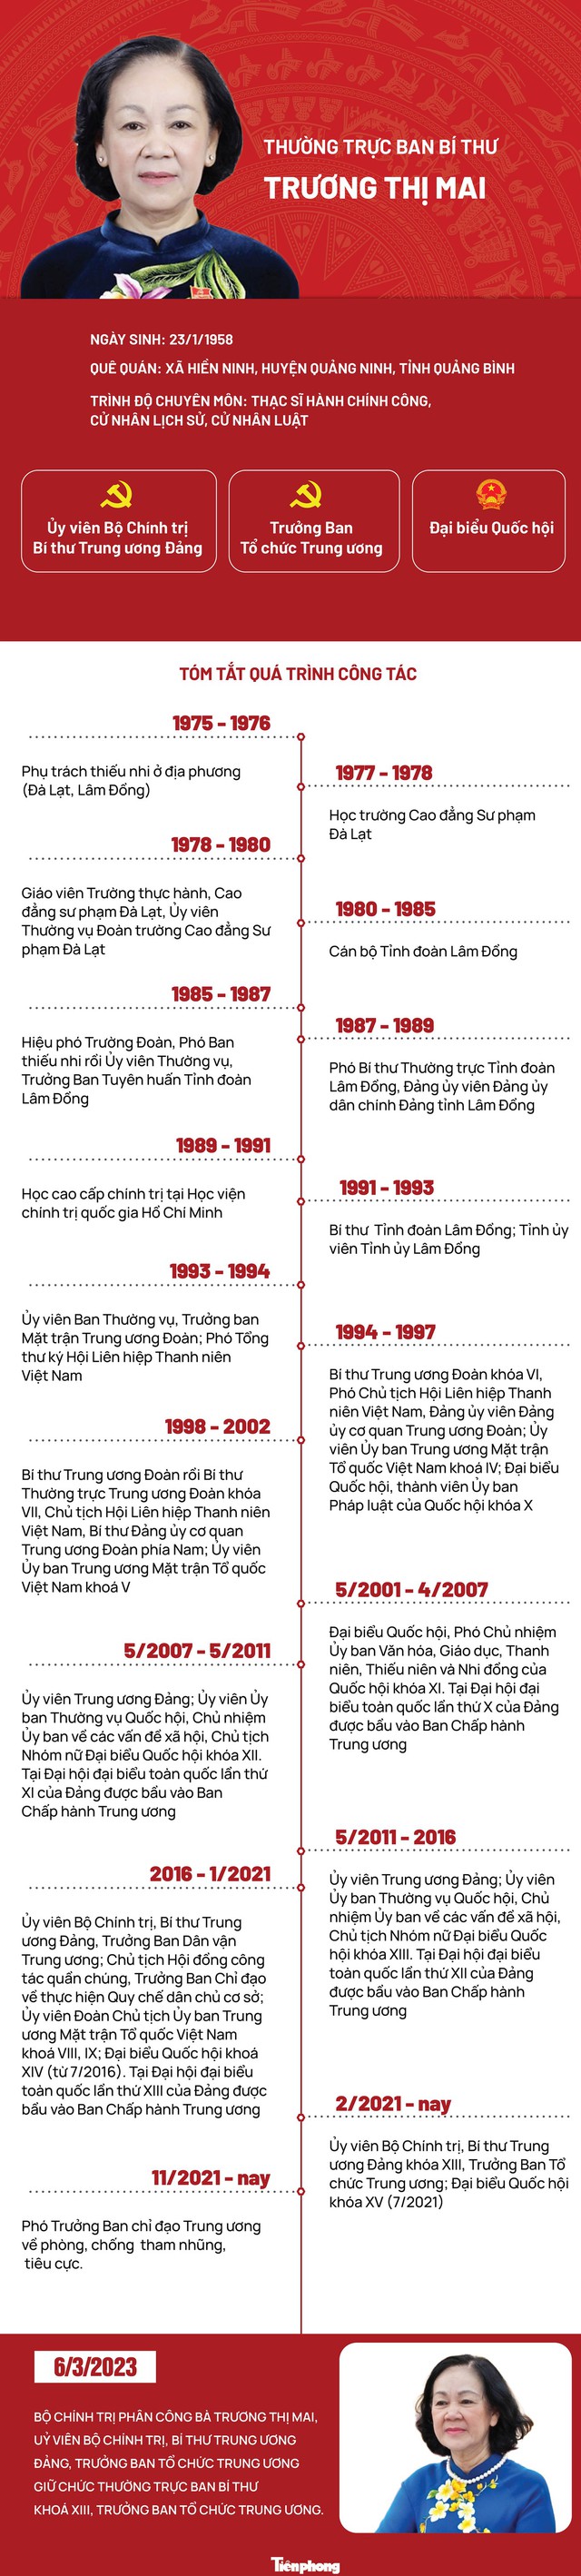 [Infographic] Chân dung Thường trực Ban Bí thư Trương Thị Mai - Ảnh 1.